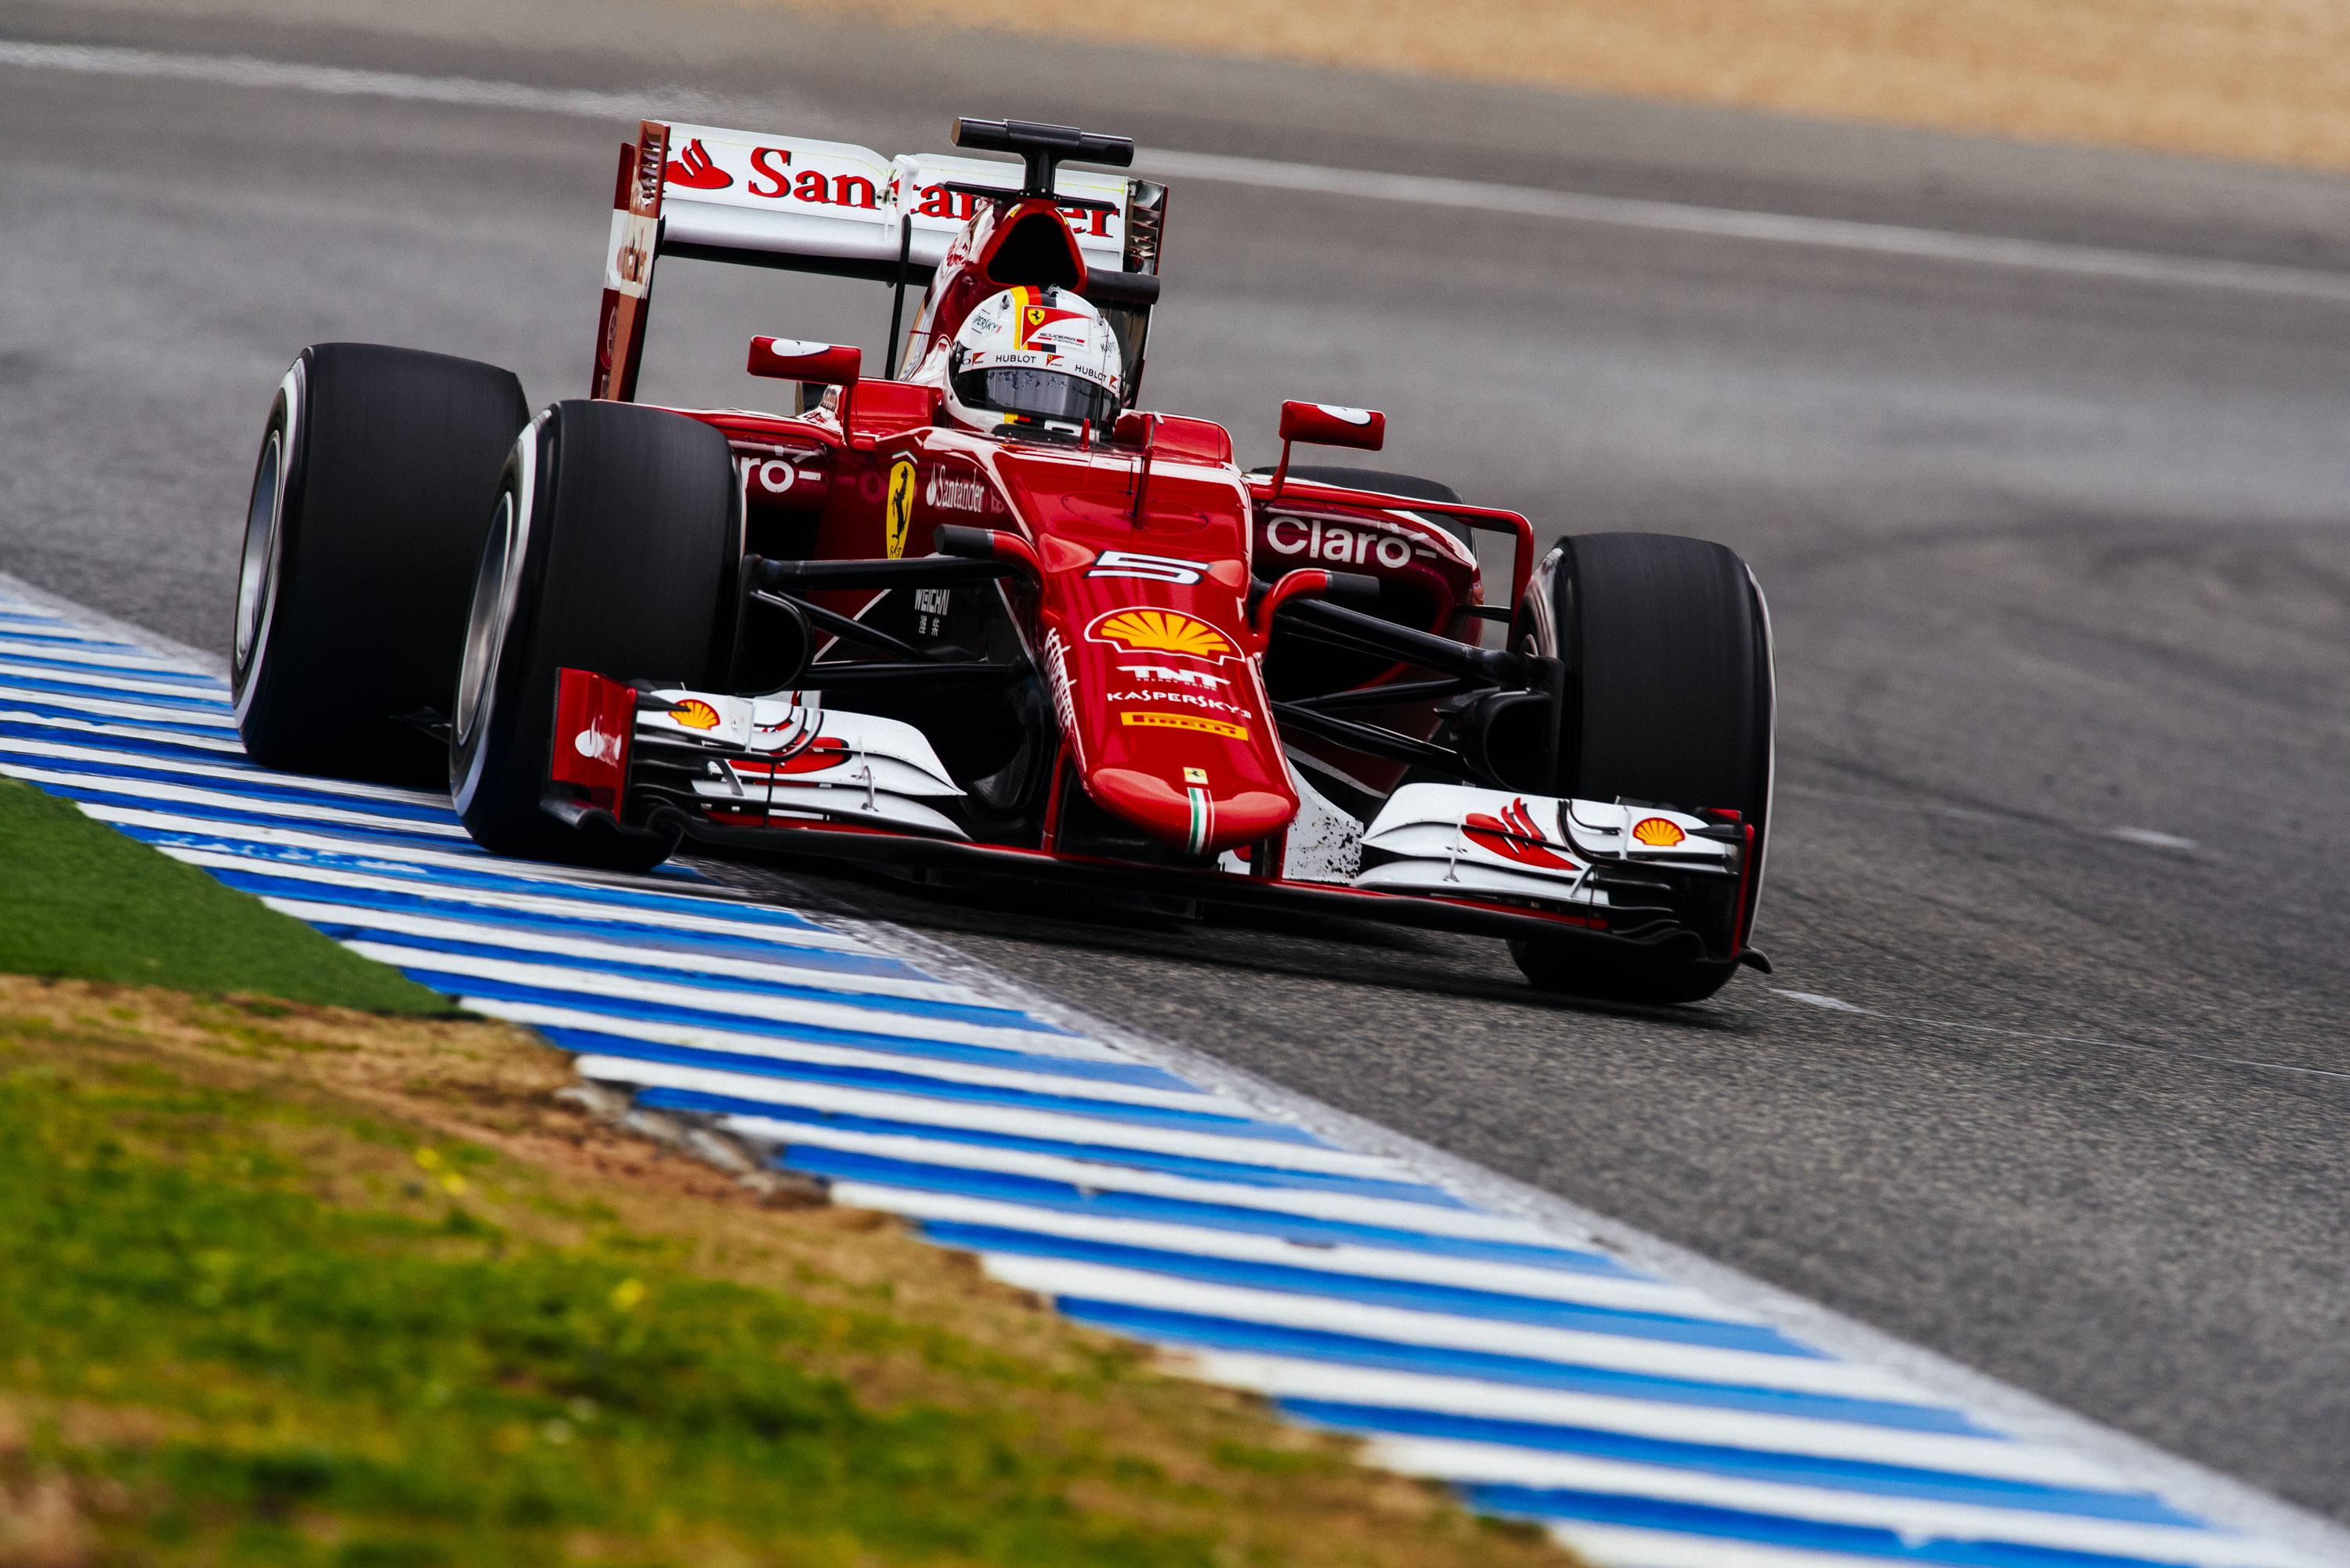 La nuova Ferrari SF15-T durante i primi test del Mondiale di F1 a Jerez de la Frontera in Spagna 